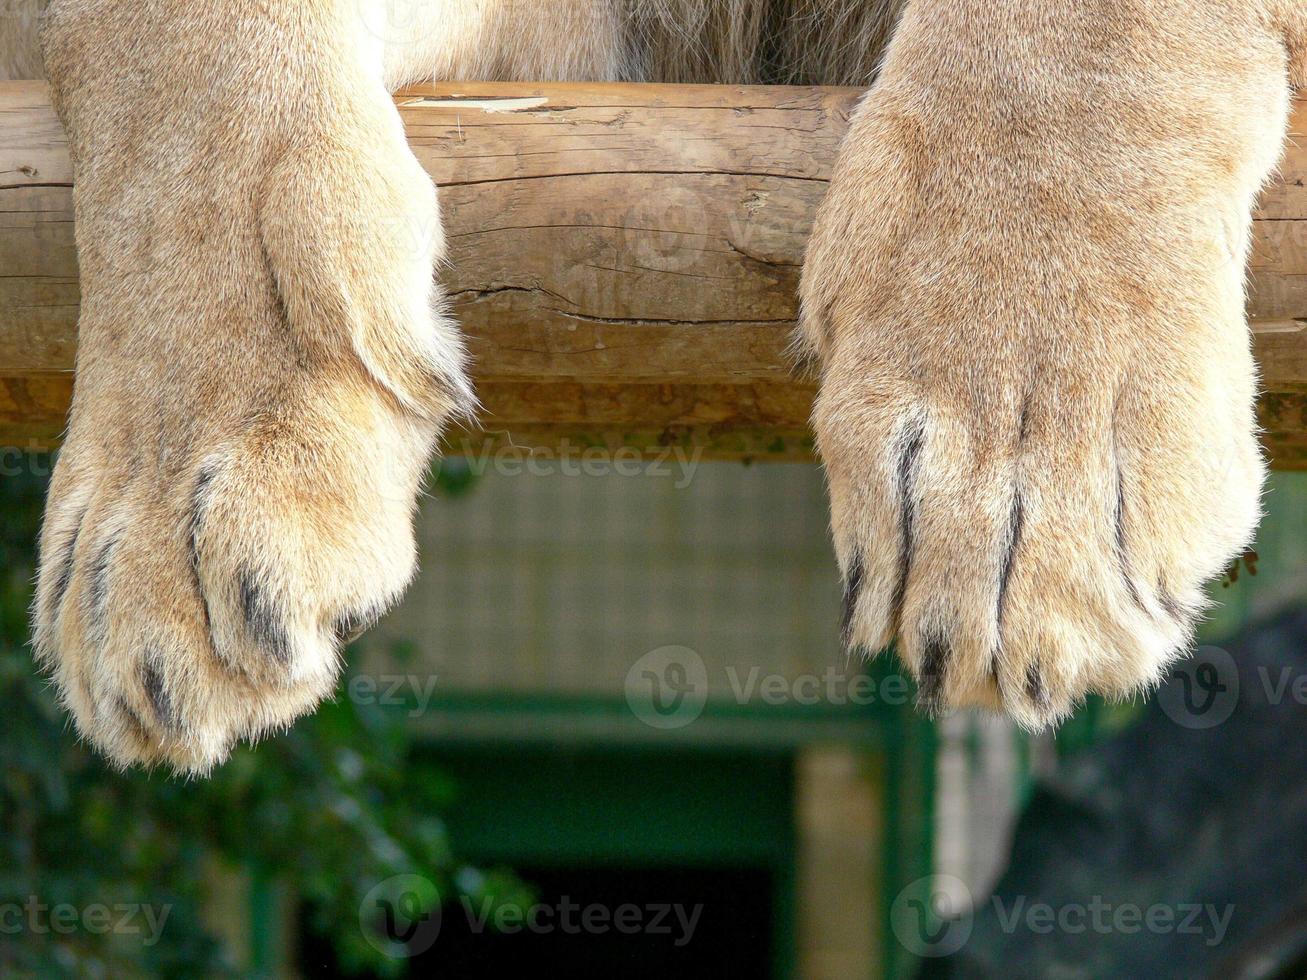 león majestuoso sentado en una plataforma de madera. foto